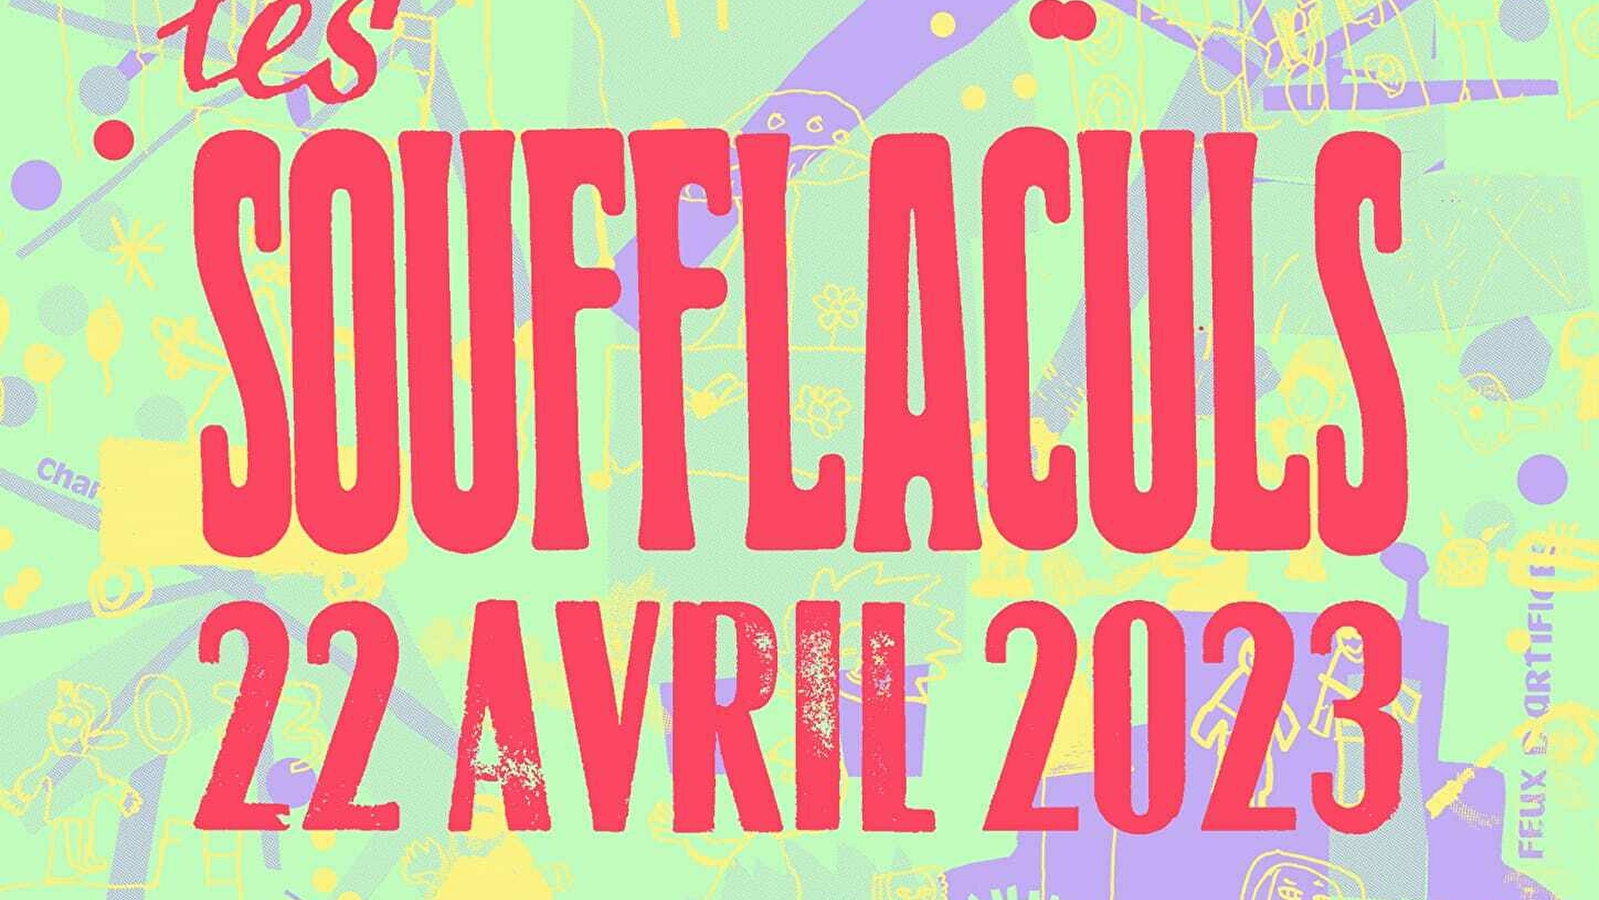 Les Soufflaculs - carnaval de Saint-Claude